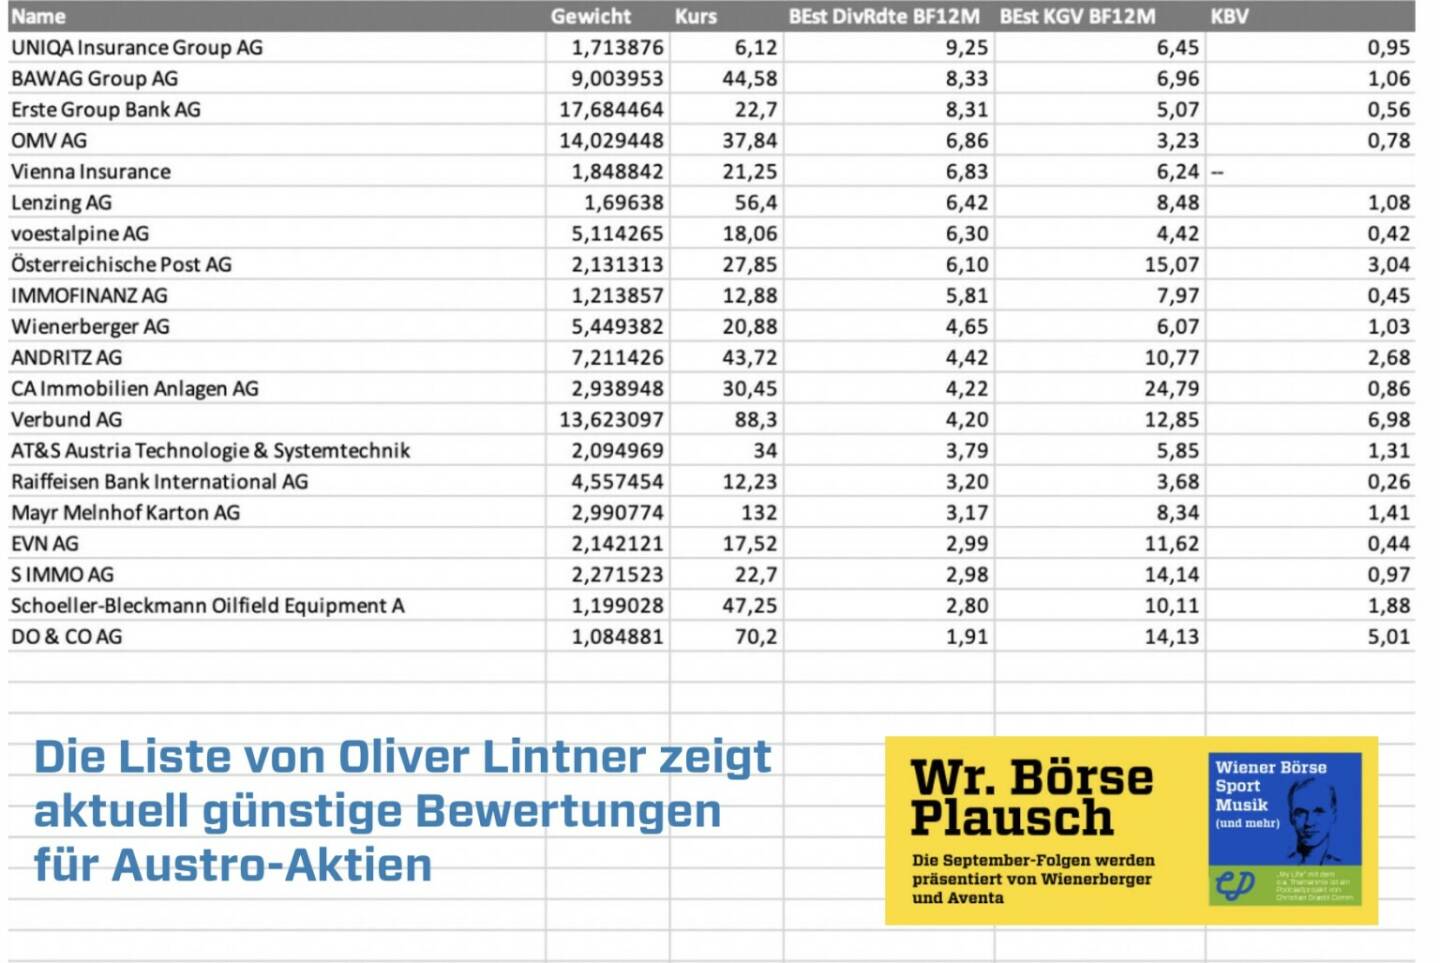 Die Liste von Oliver Lintner zeigt aktuell günstige Bewertungen für Austro-Aktien. Dies und mehr in Folge S3/17 der Wiener Börse Pläusche im Rahmen von http://www.christian-drastil.com/podcast . 